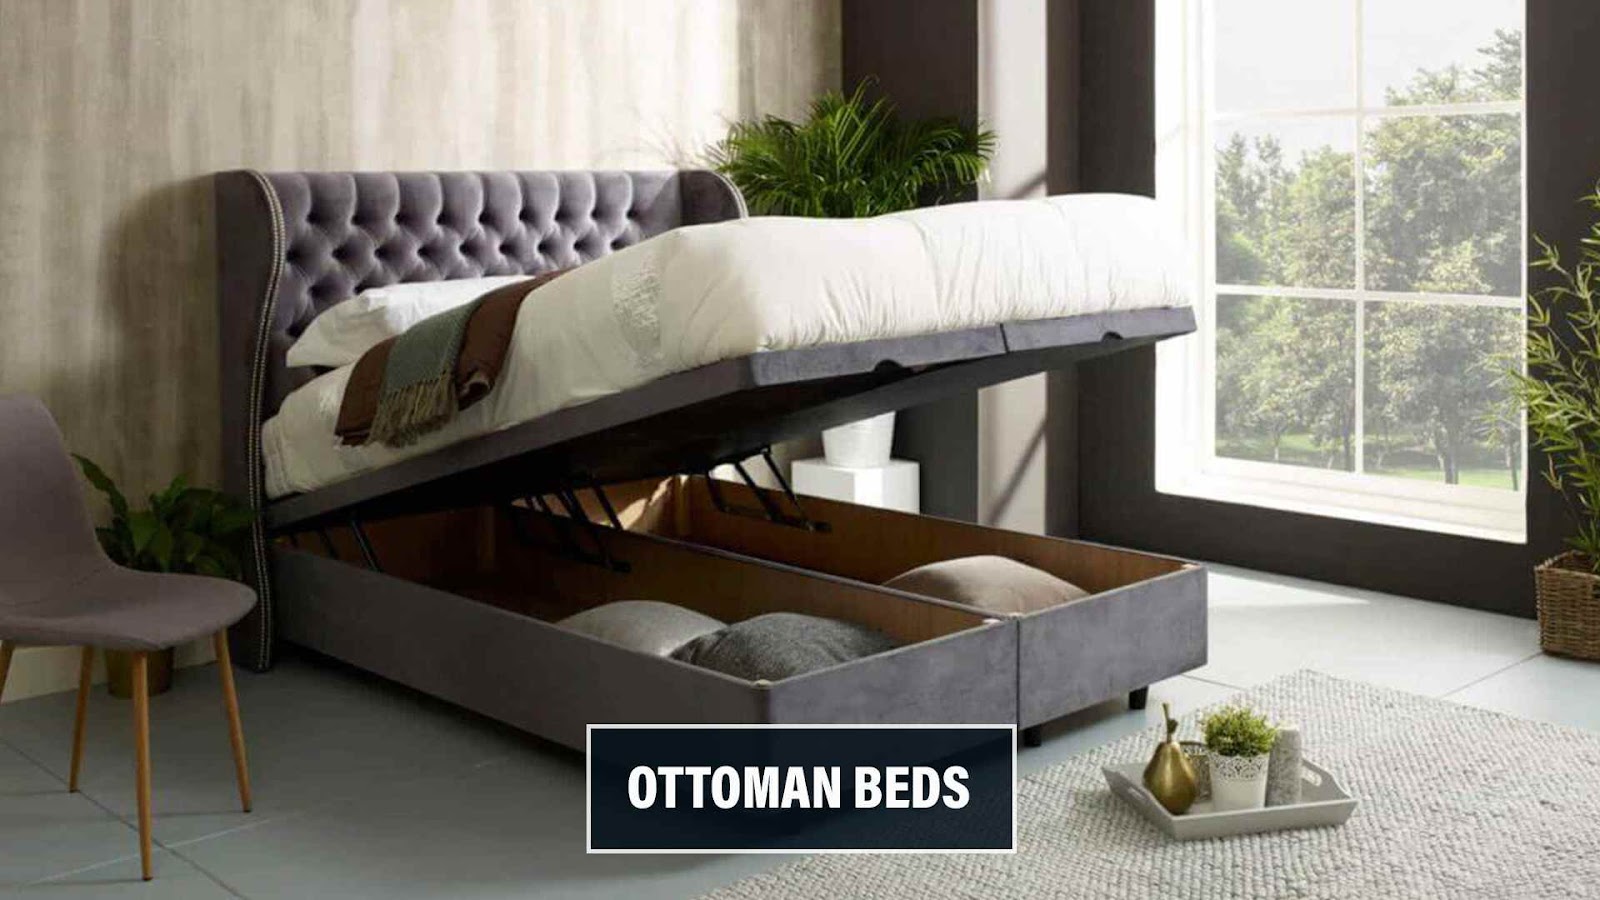 Ottoman Beds